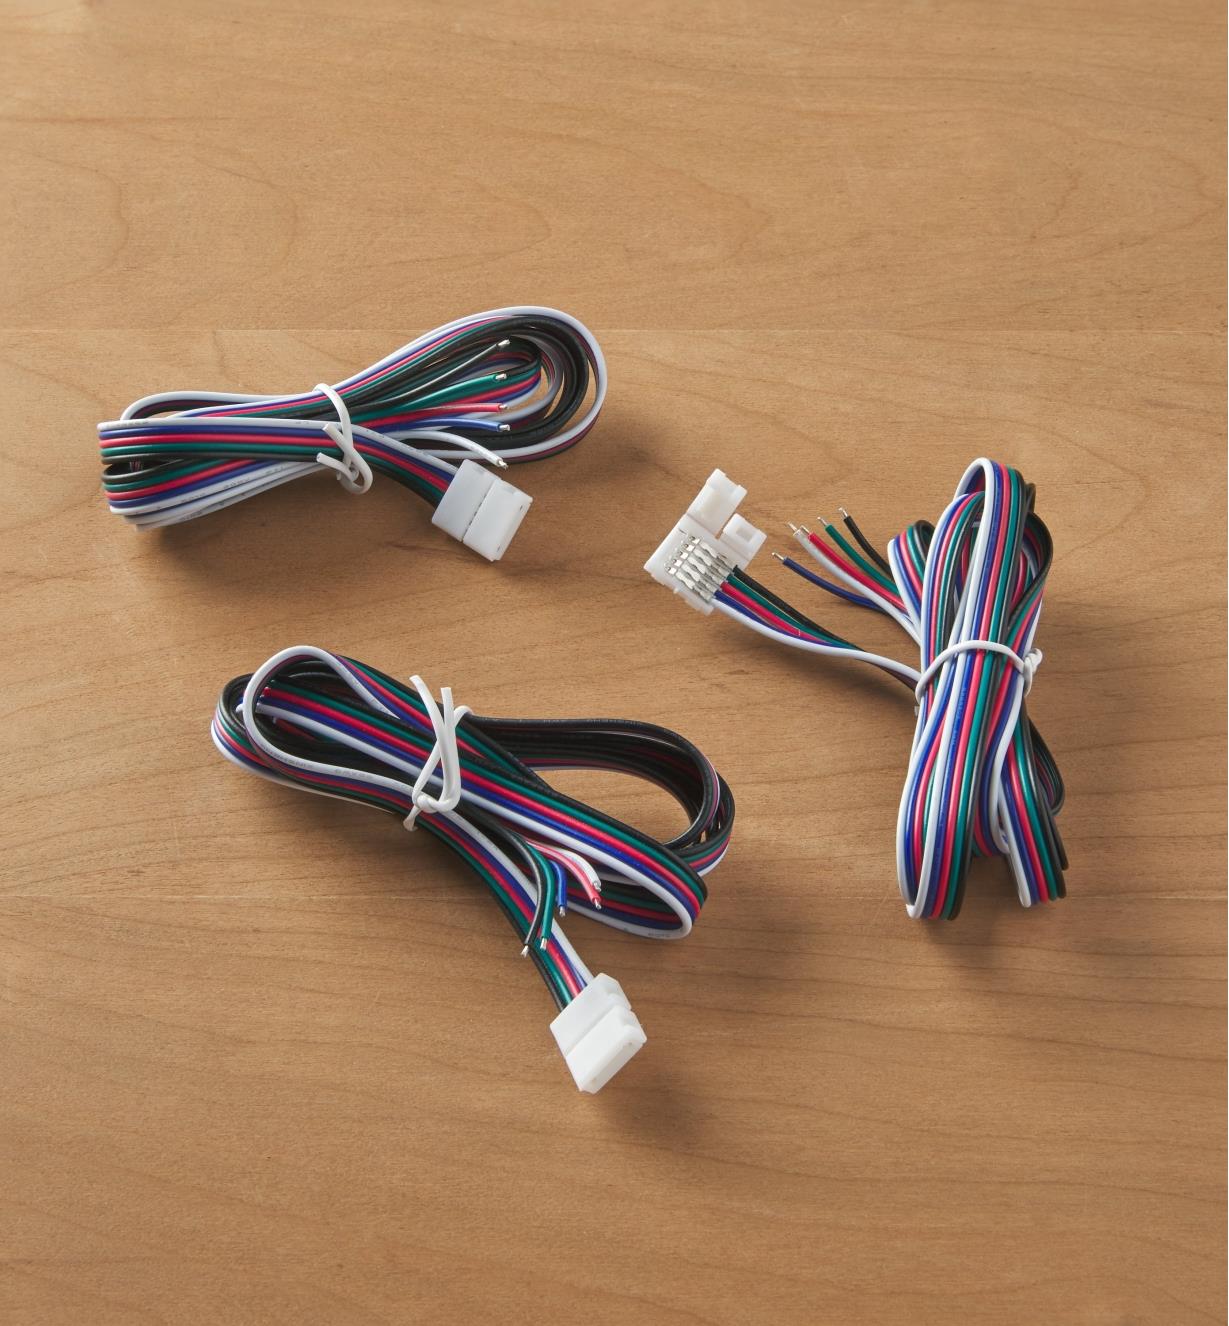 00U4653 - Câble de 48 po avec connecteur pour luminaires à DEL couleur et blanches, pqt de 3